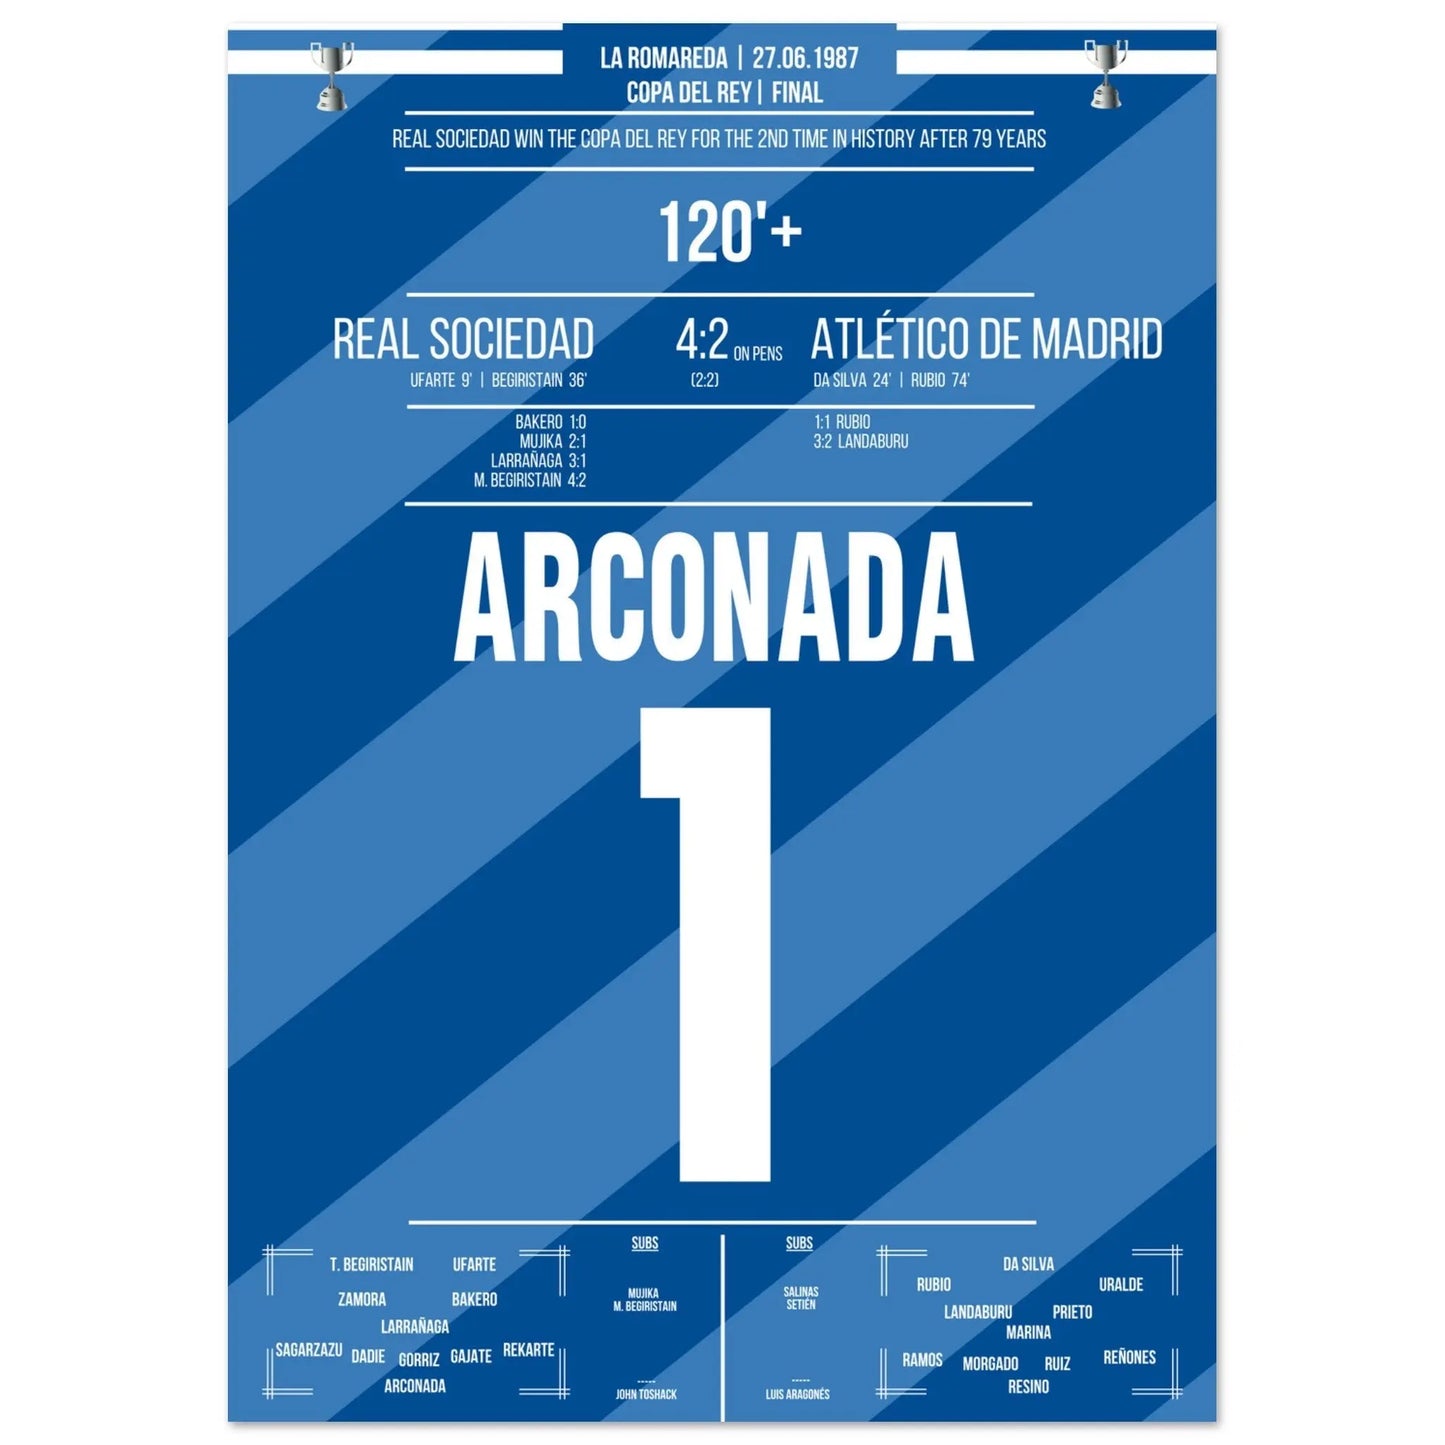 Luis Arconada hält den entscheidenden Elfmeter und krönt Real Sociedad zum Copa Del Rey Sieger 1987